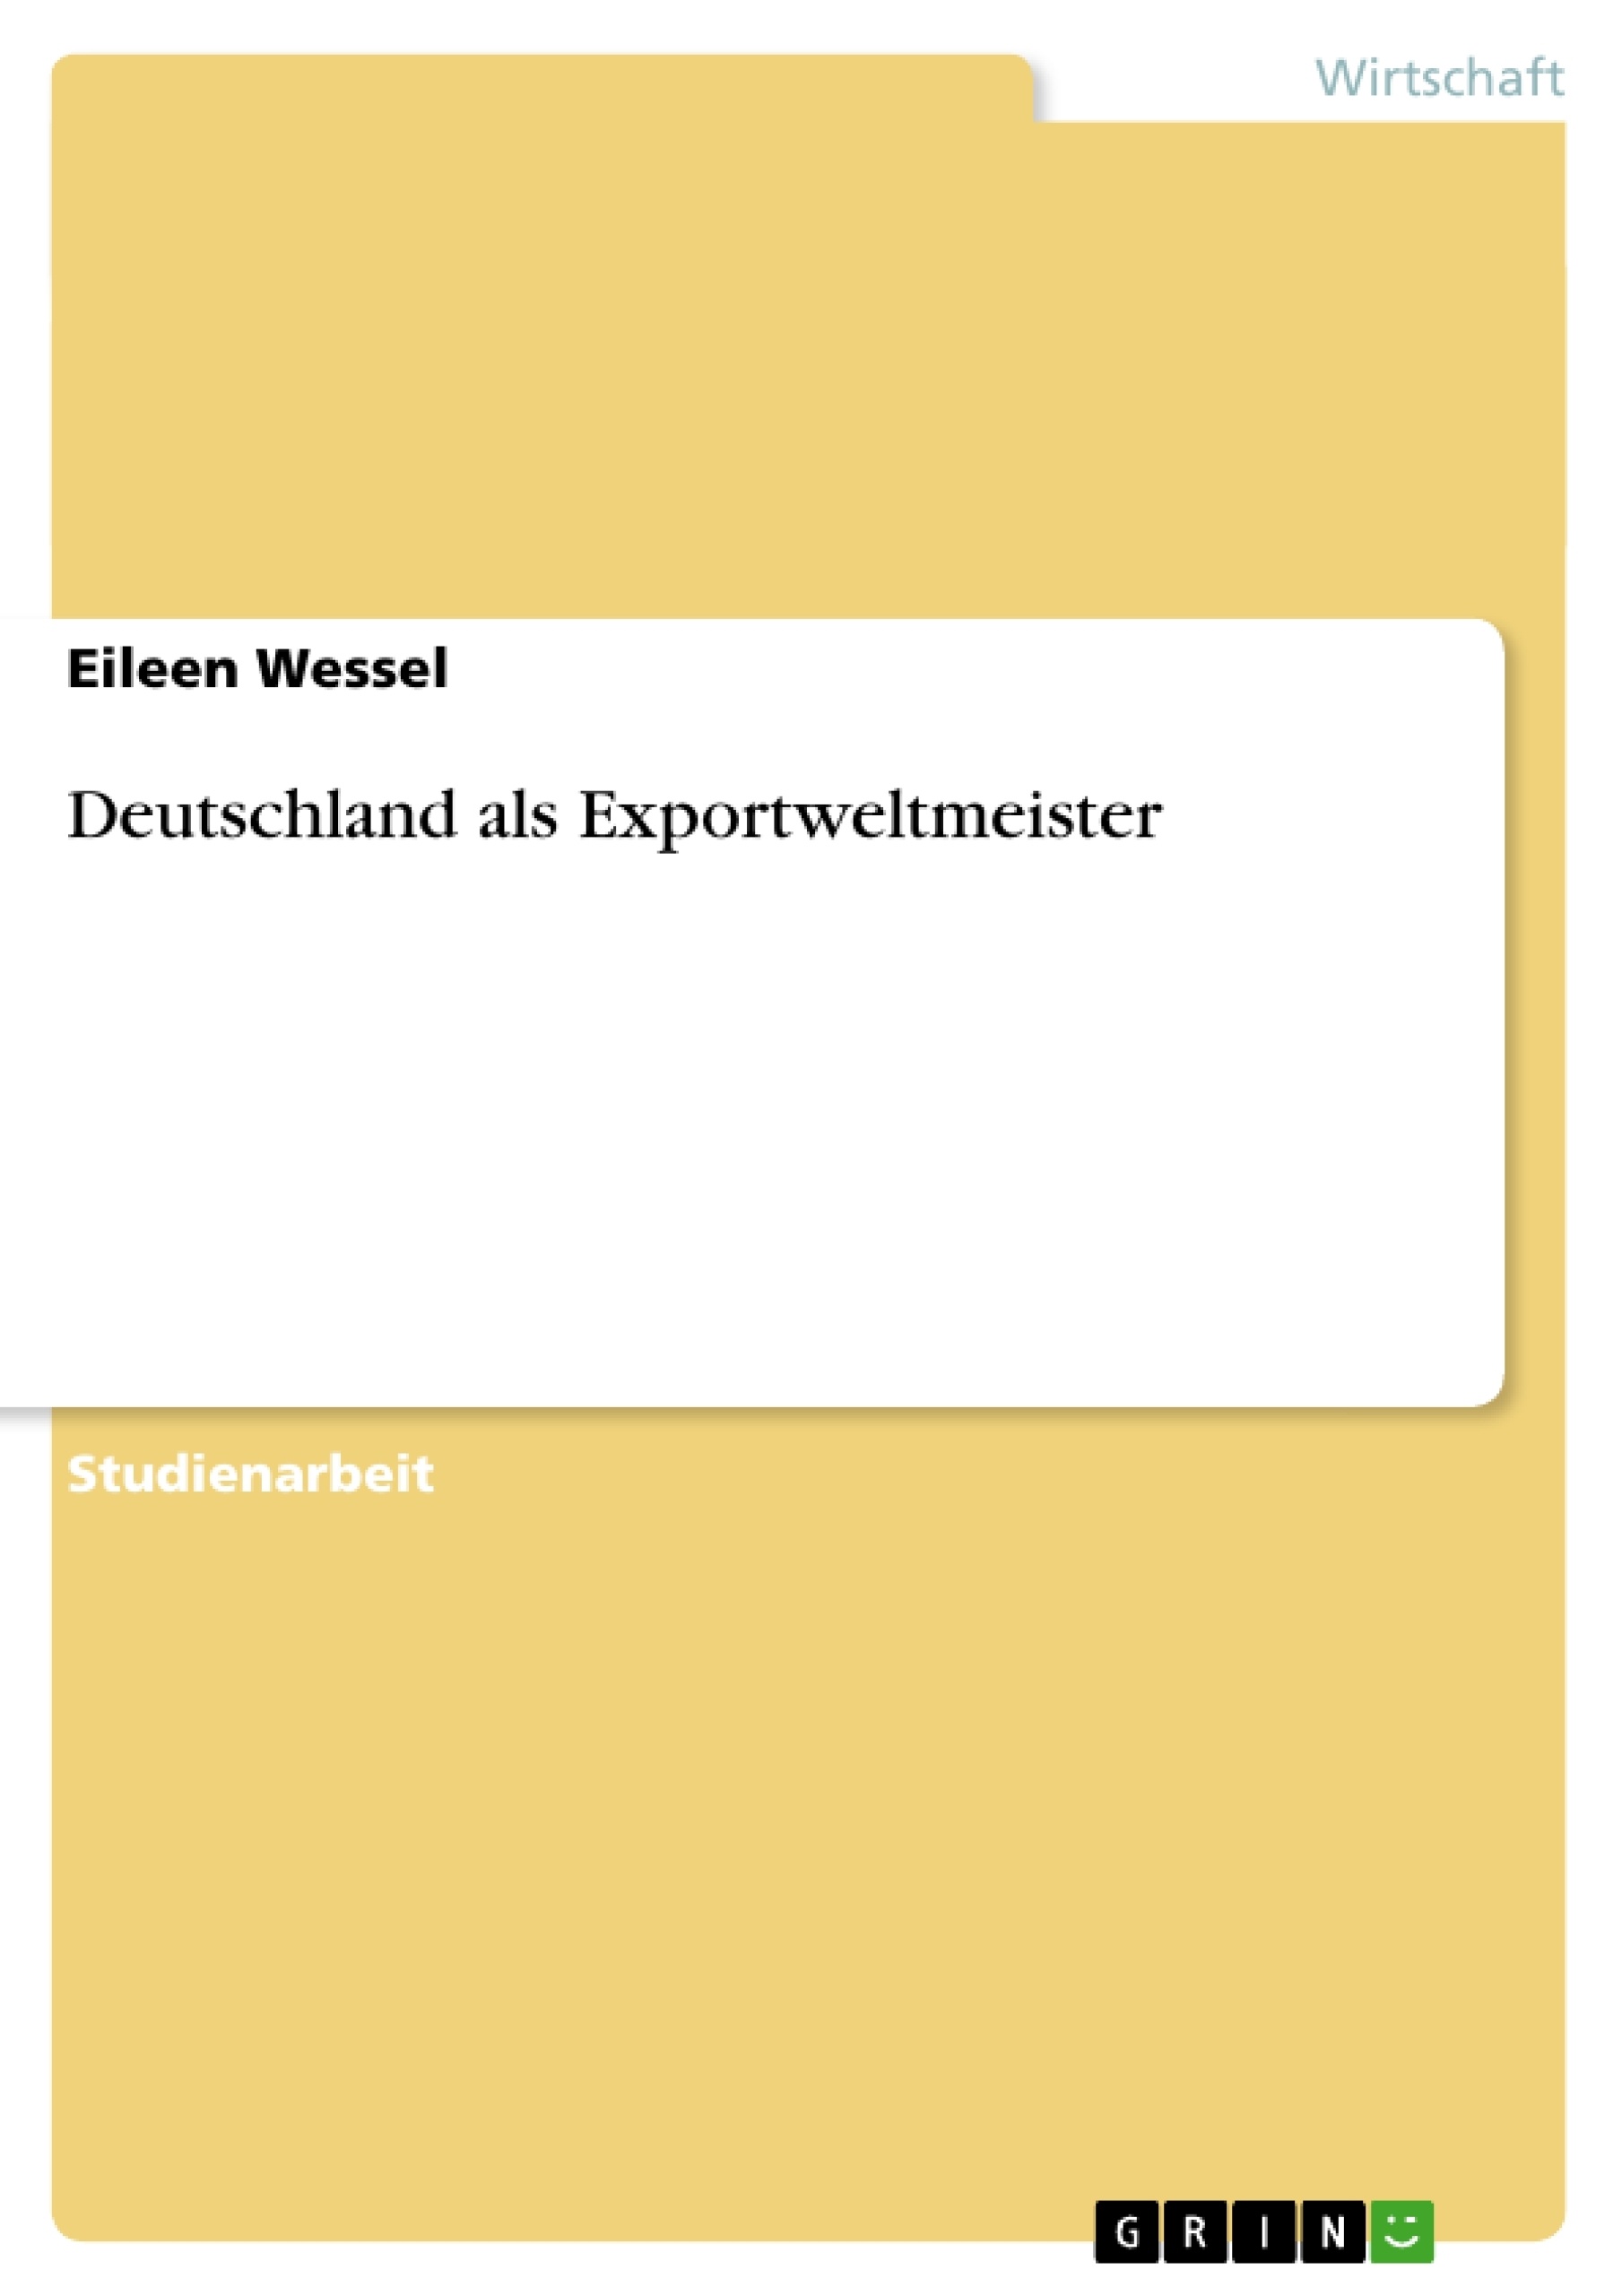 Titel: Deutschland als Exportweltmeister